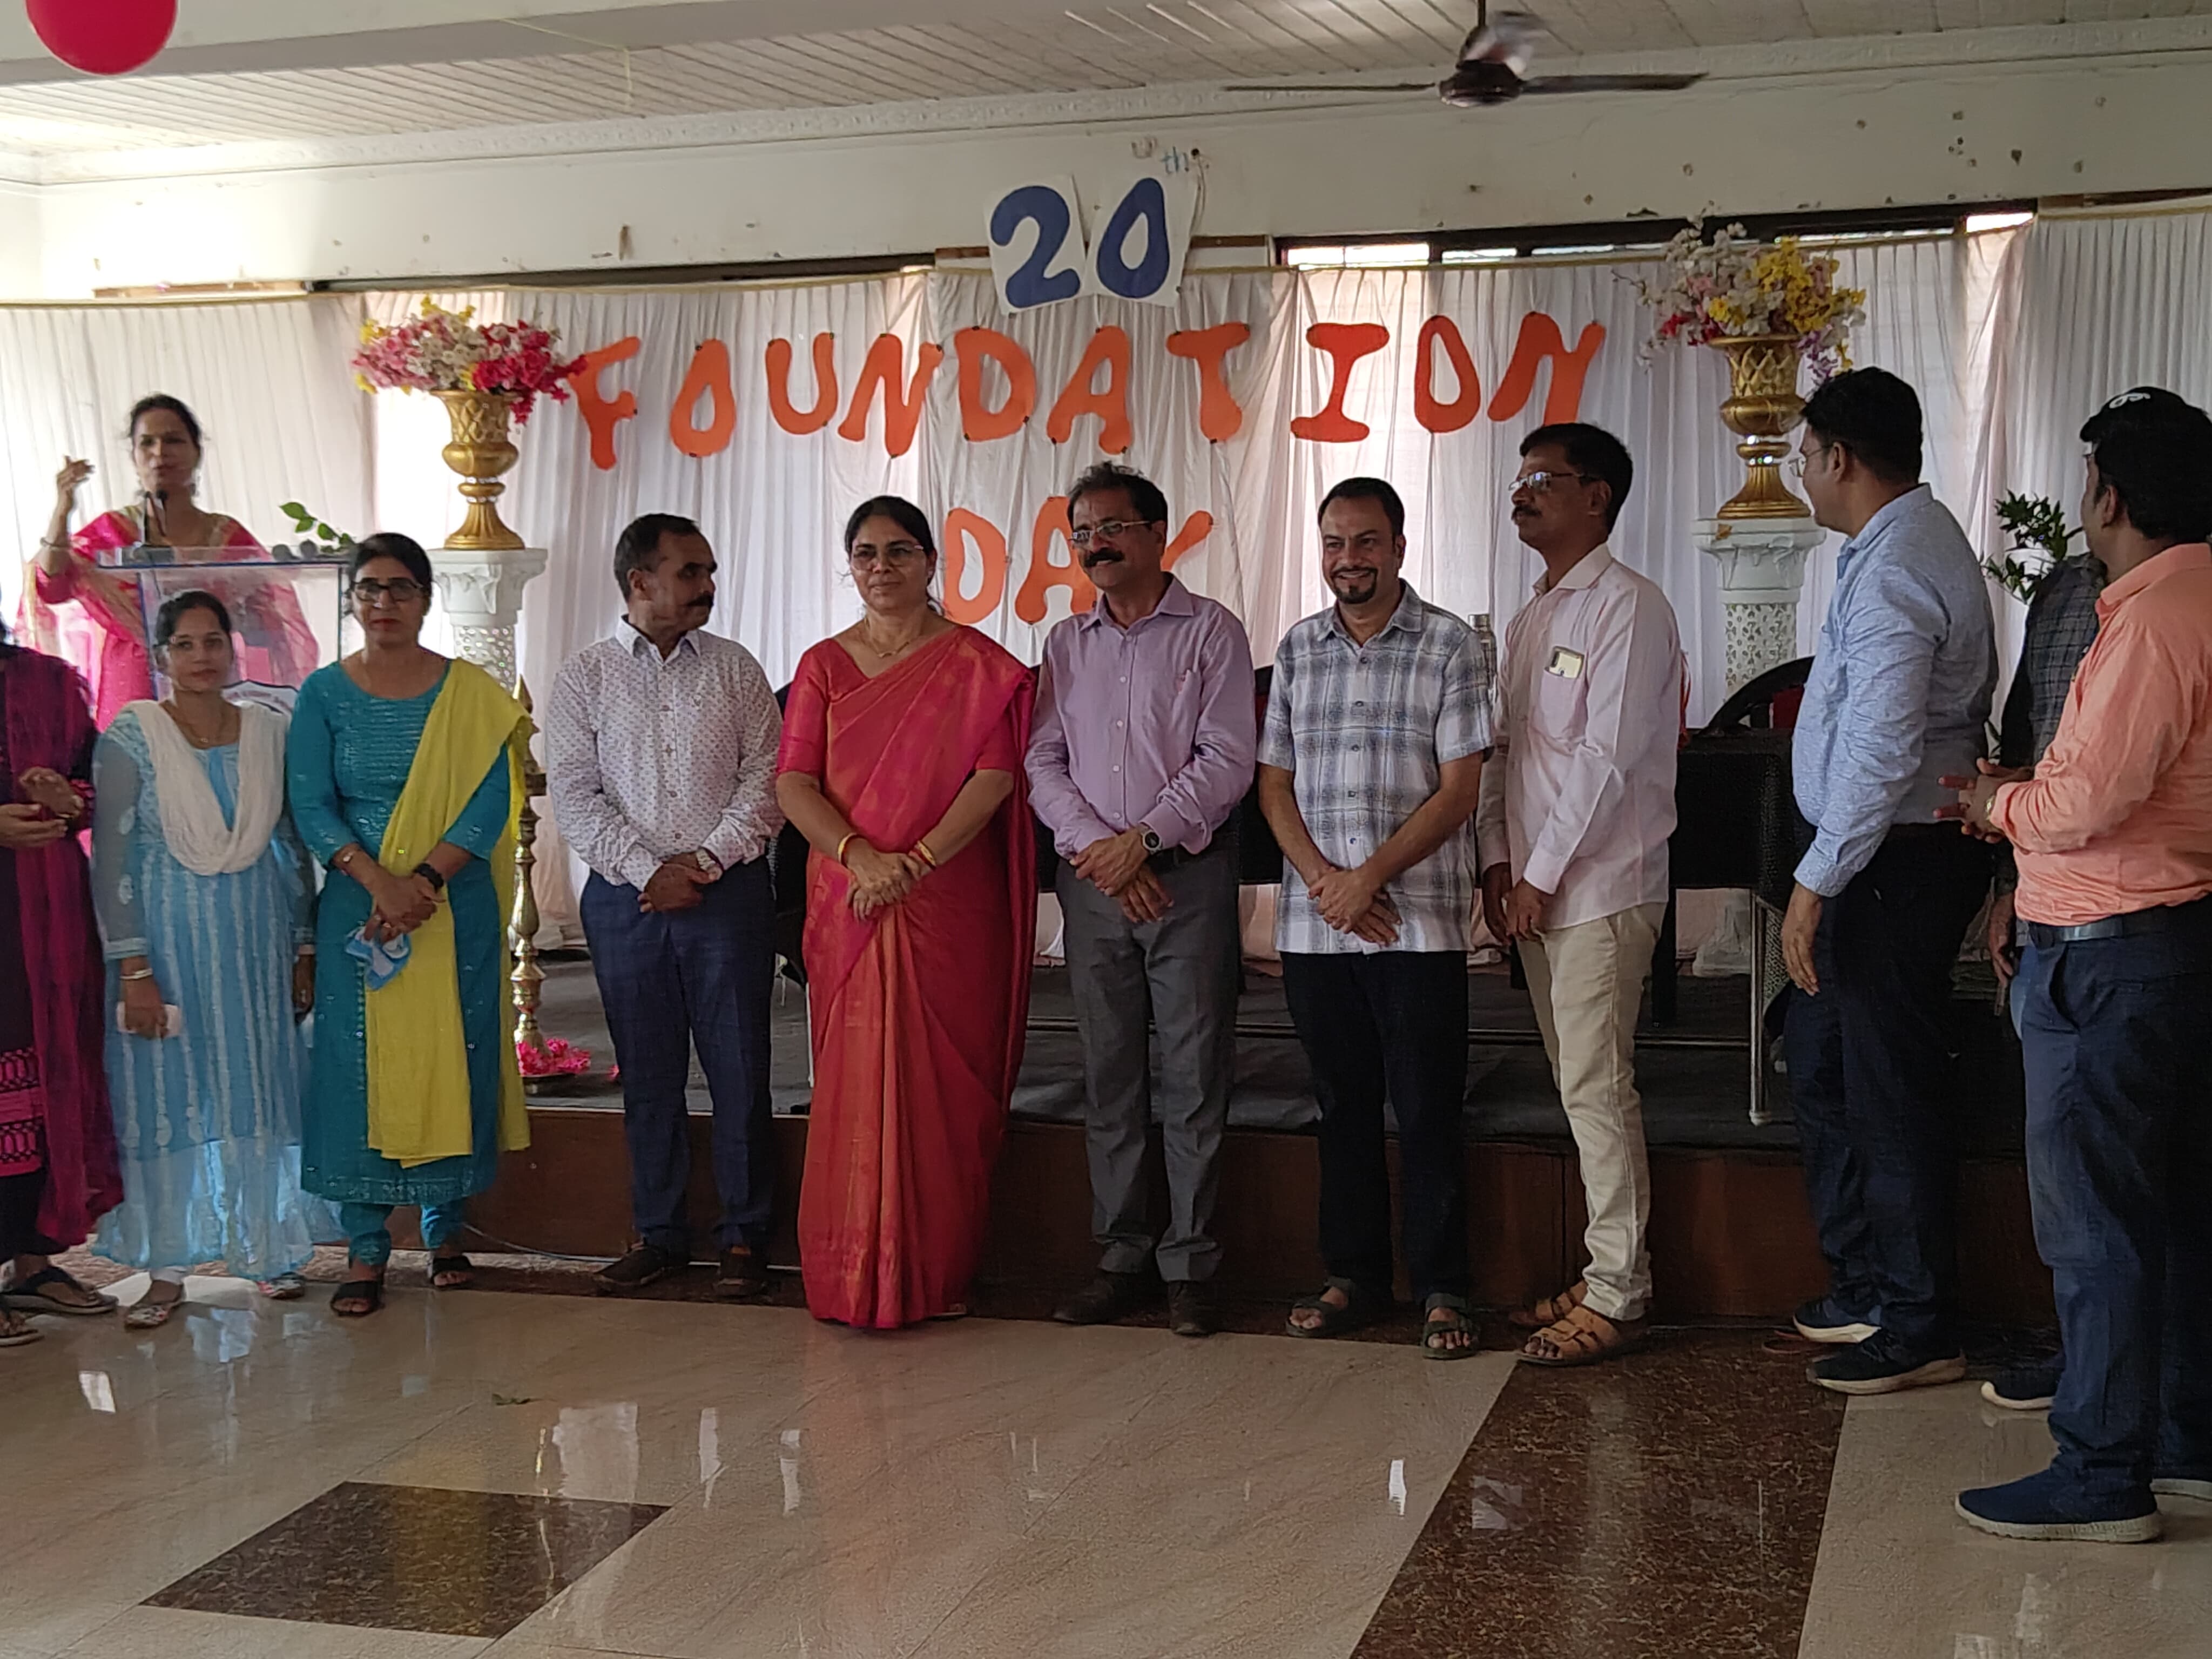 Foundation Day Celebration